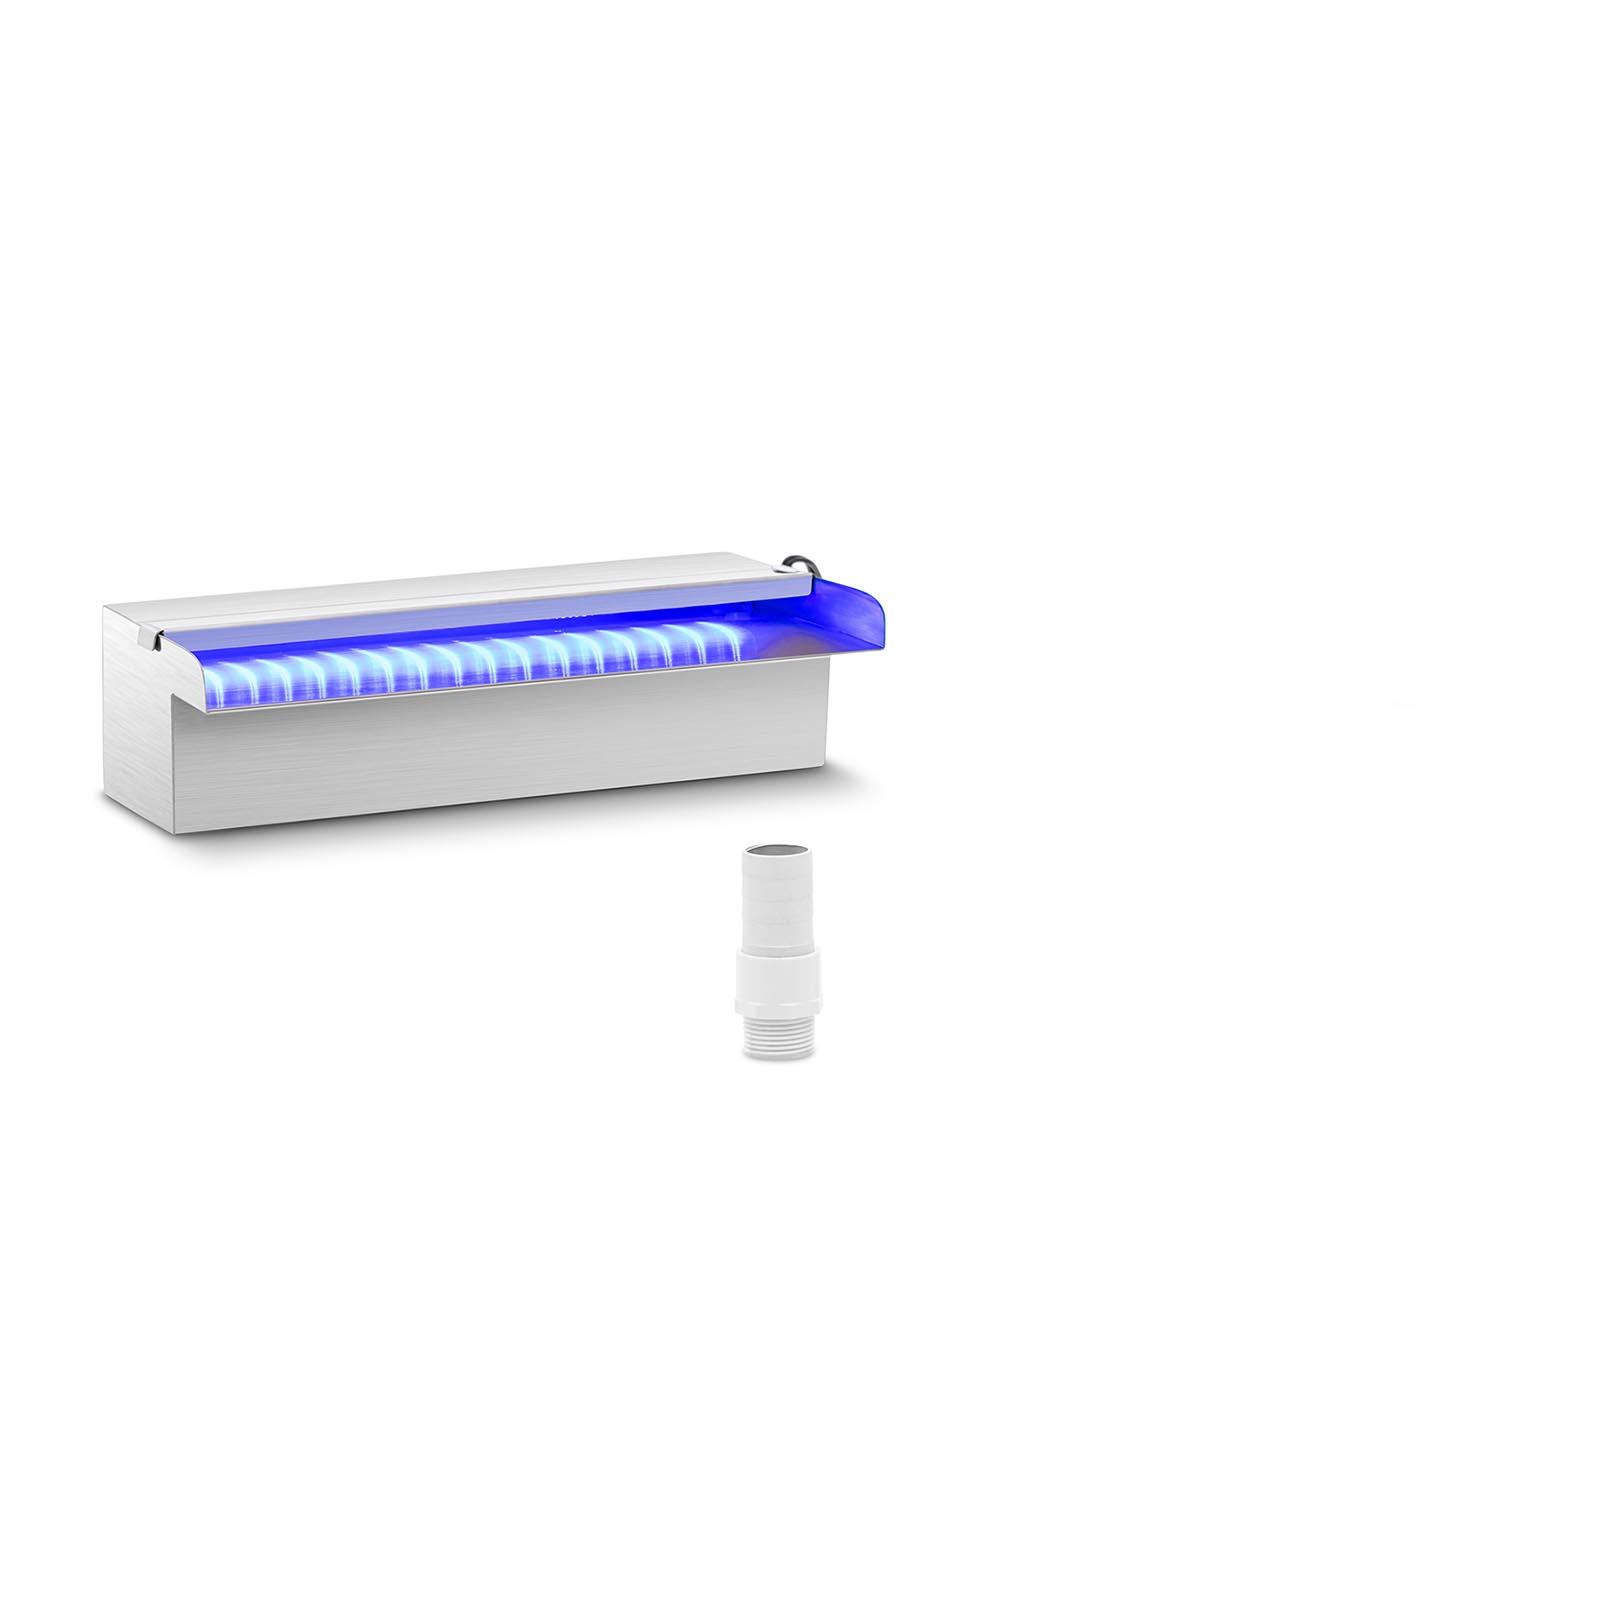 Medence szökőkút - 30 cm - LED világítás - kék/fehér | Uniprodo